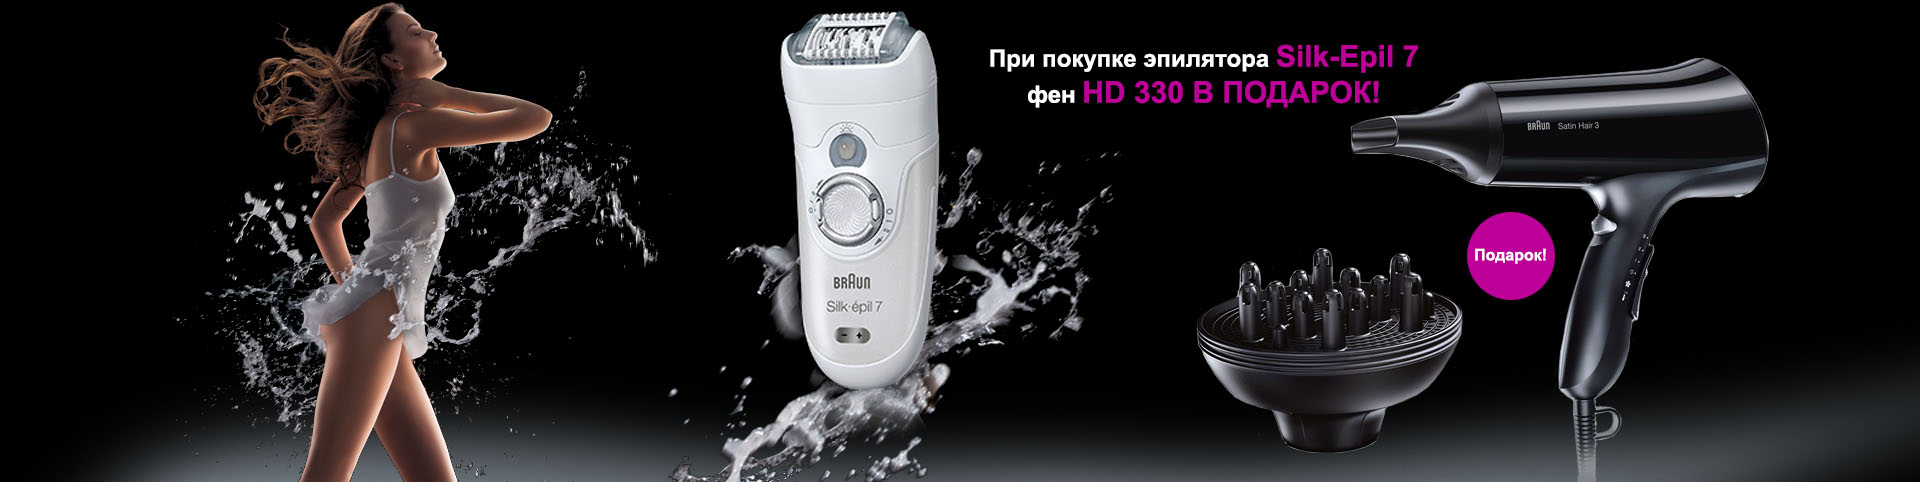 Купив эпилятор Braun Silk-epil 7, в подарок вы получите фен HD 330